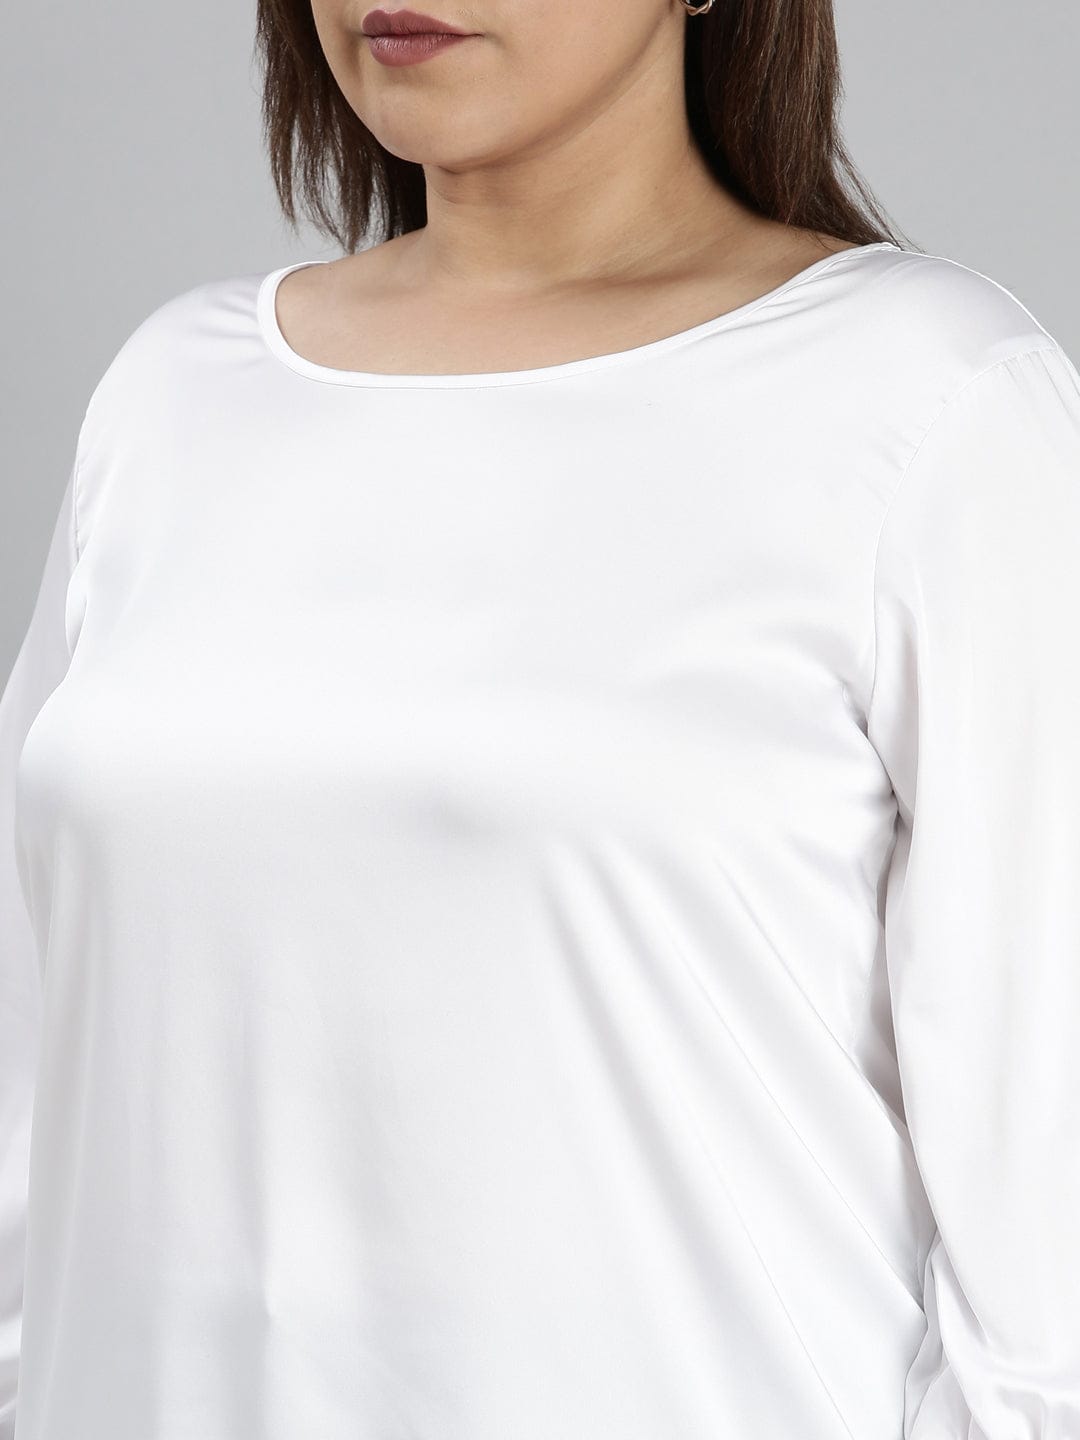 TheShaili - Women's Solid White satin round neck top